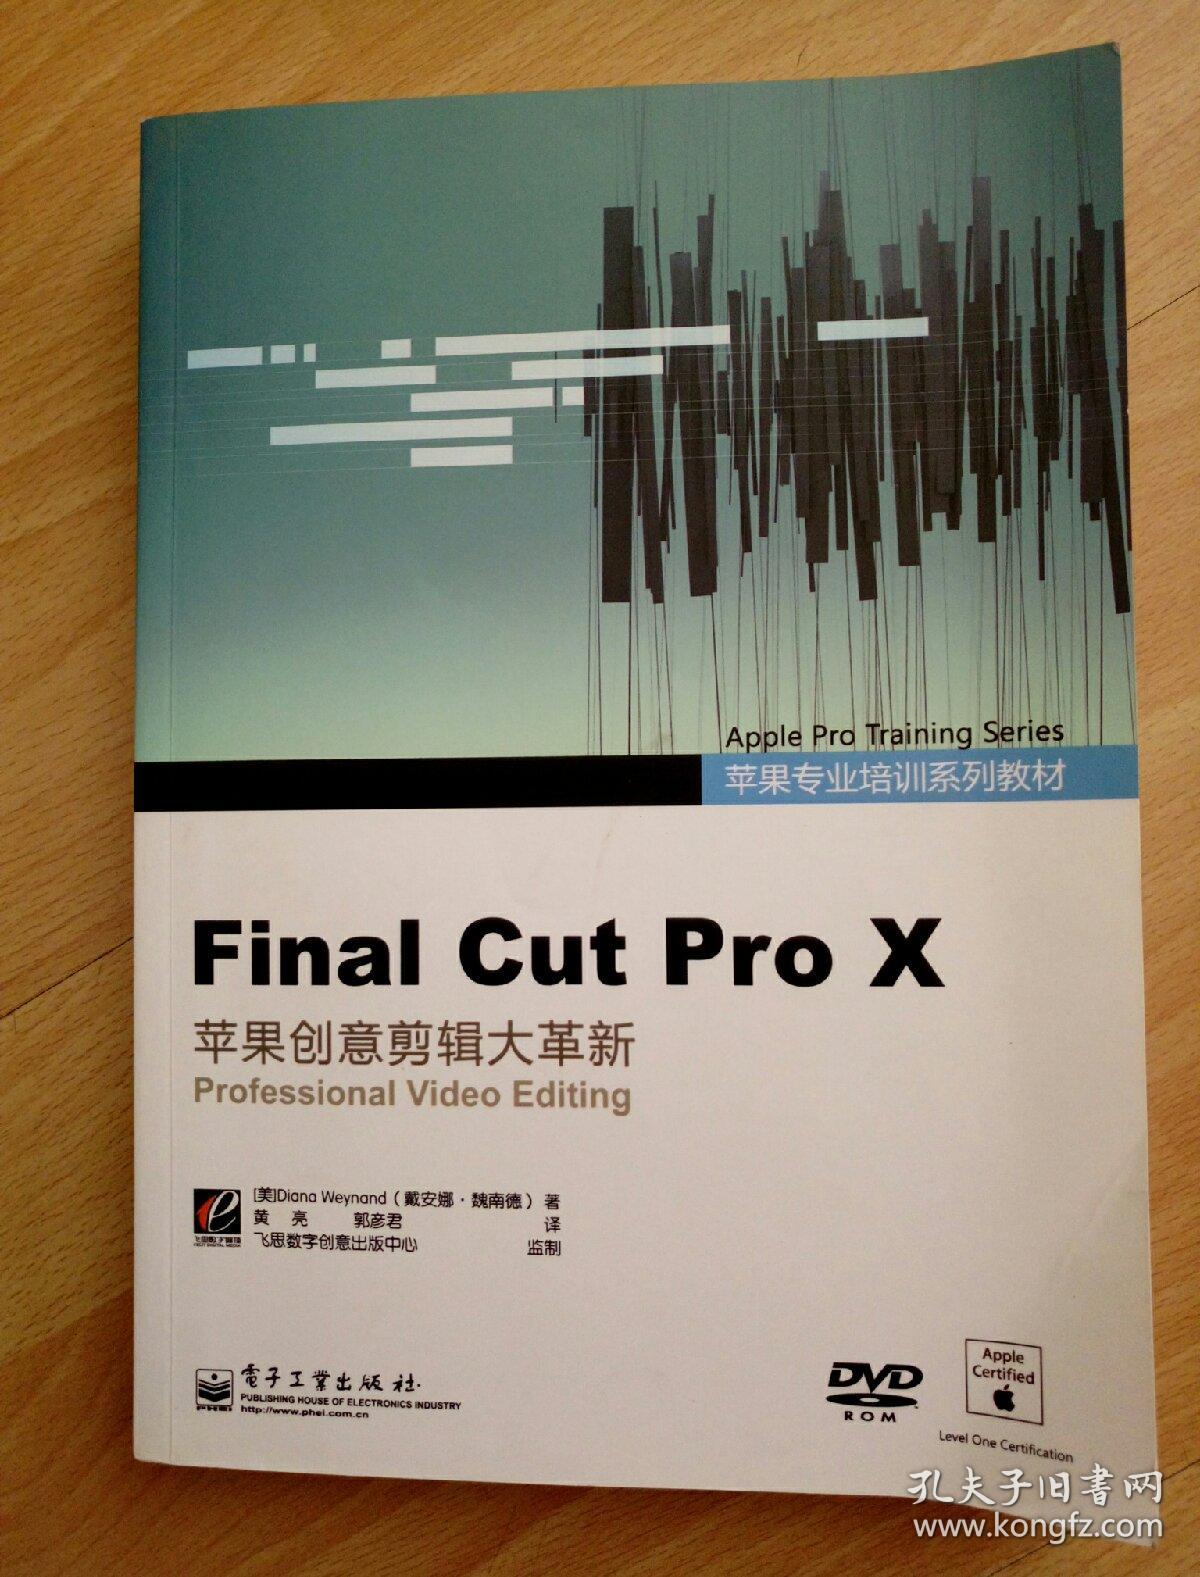 苹果专业培训系列教材:Final Cut Pro X